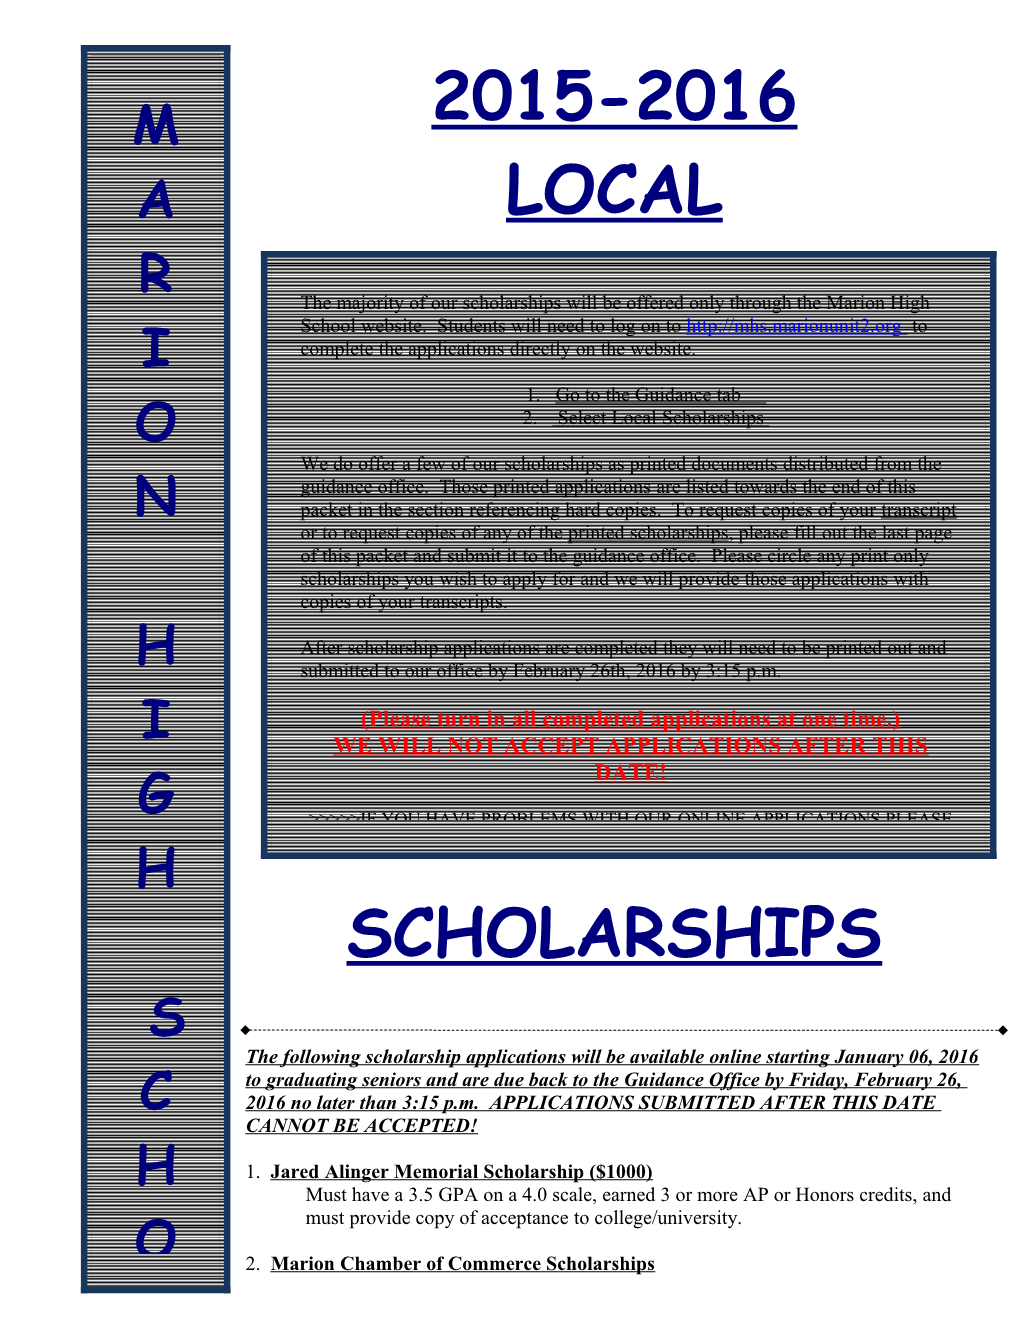 1. Jared Alinger Memorial Scholarship ($1000)